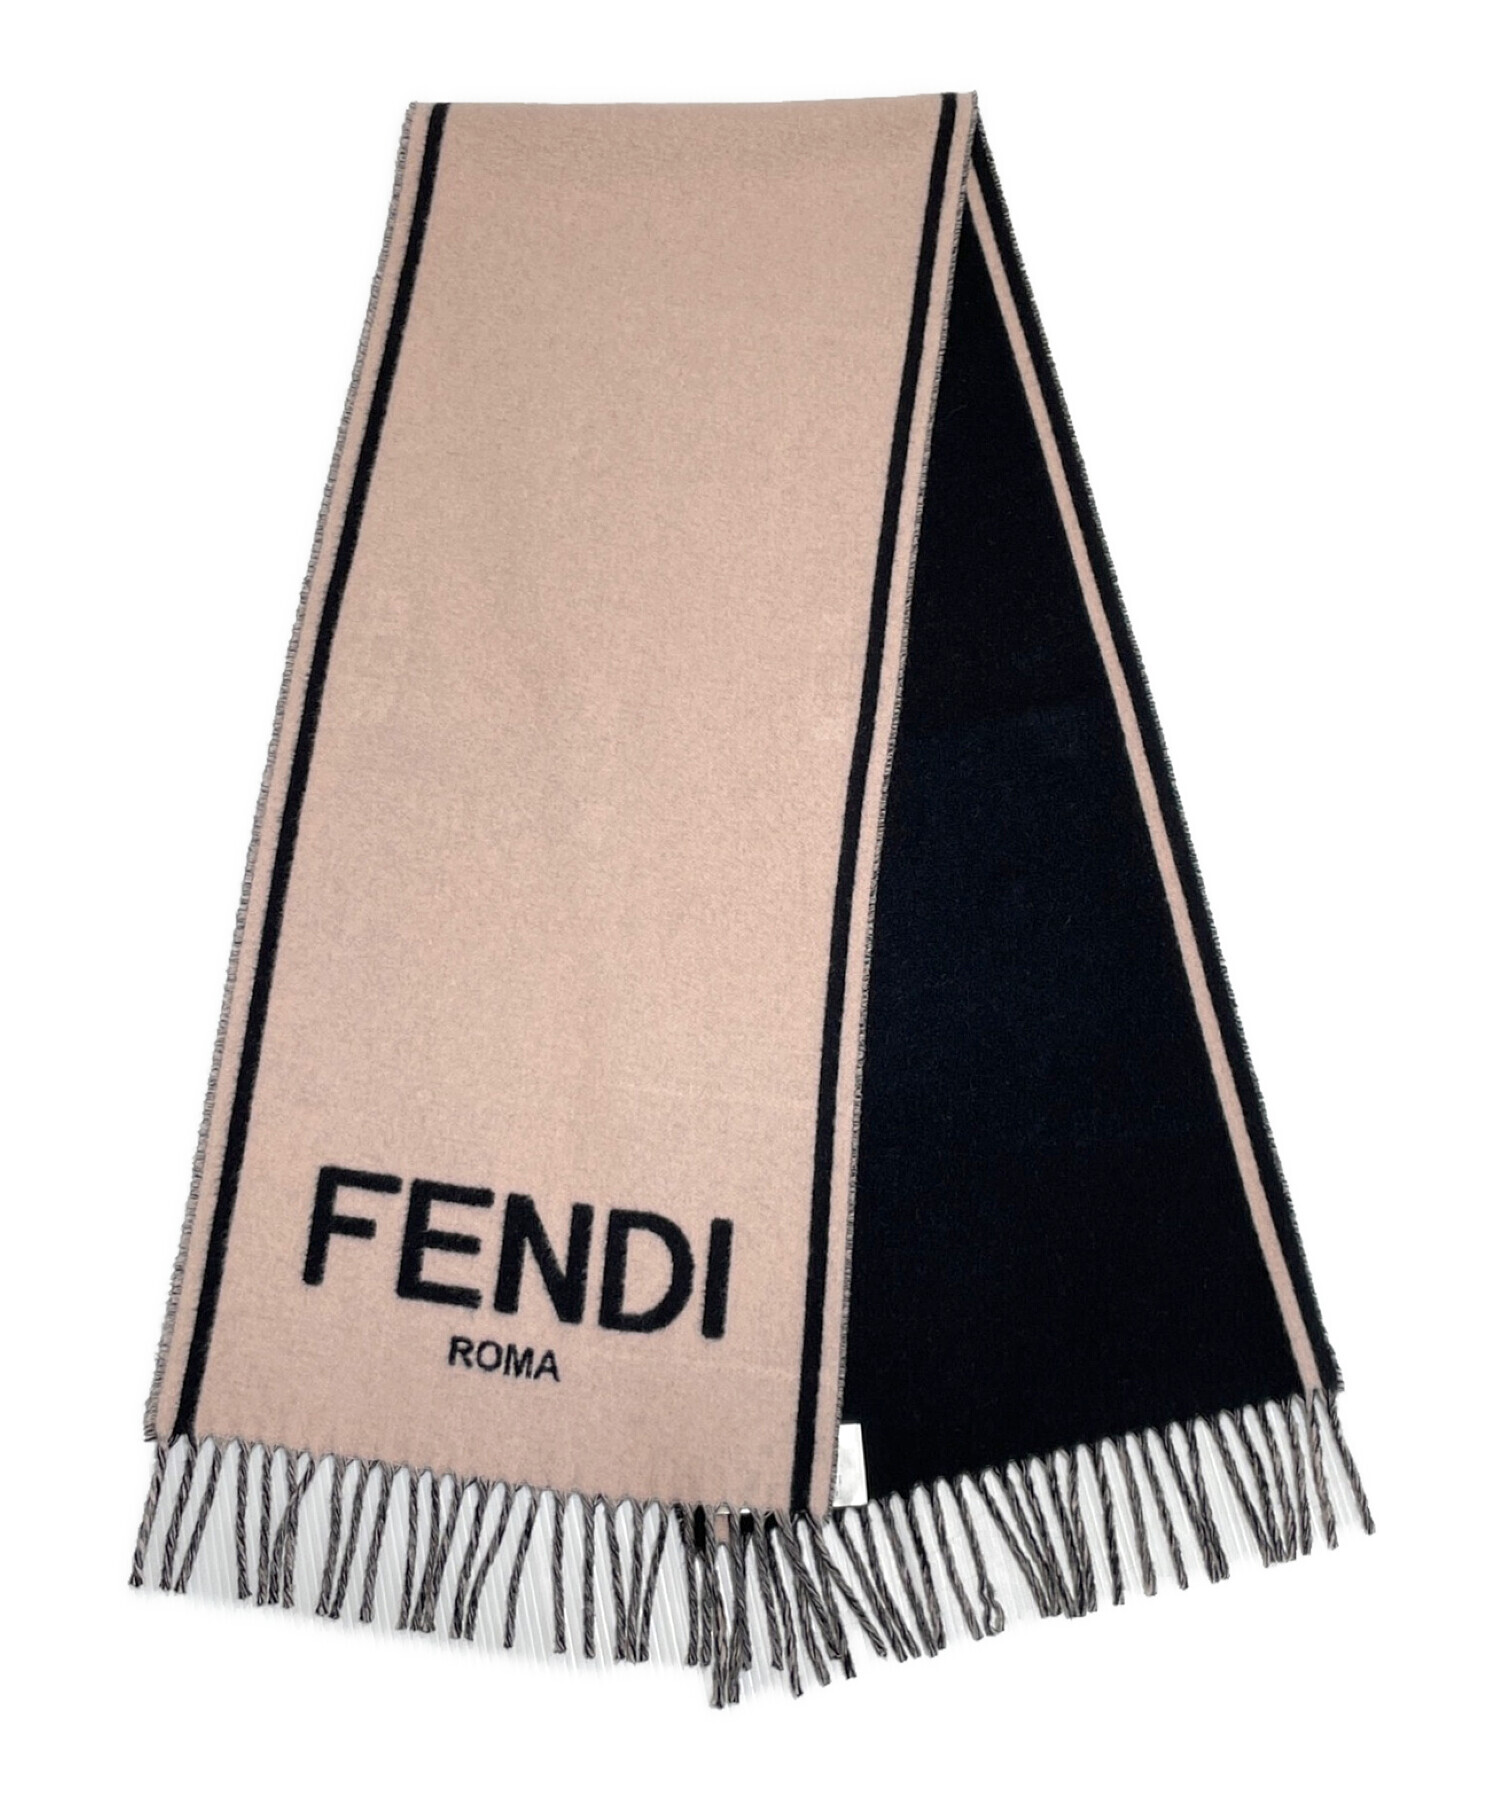 FENDI (フェンディ) カシミヤロゴマフラー ピンク